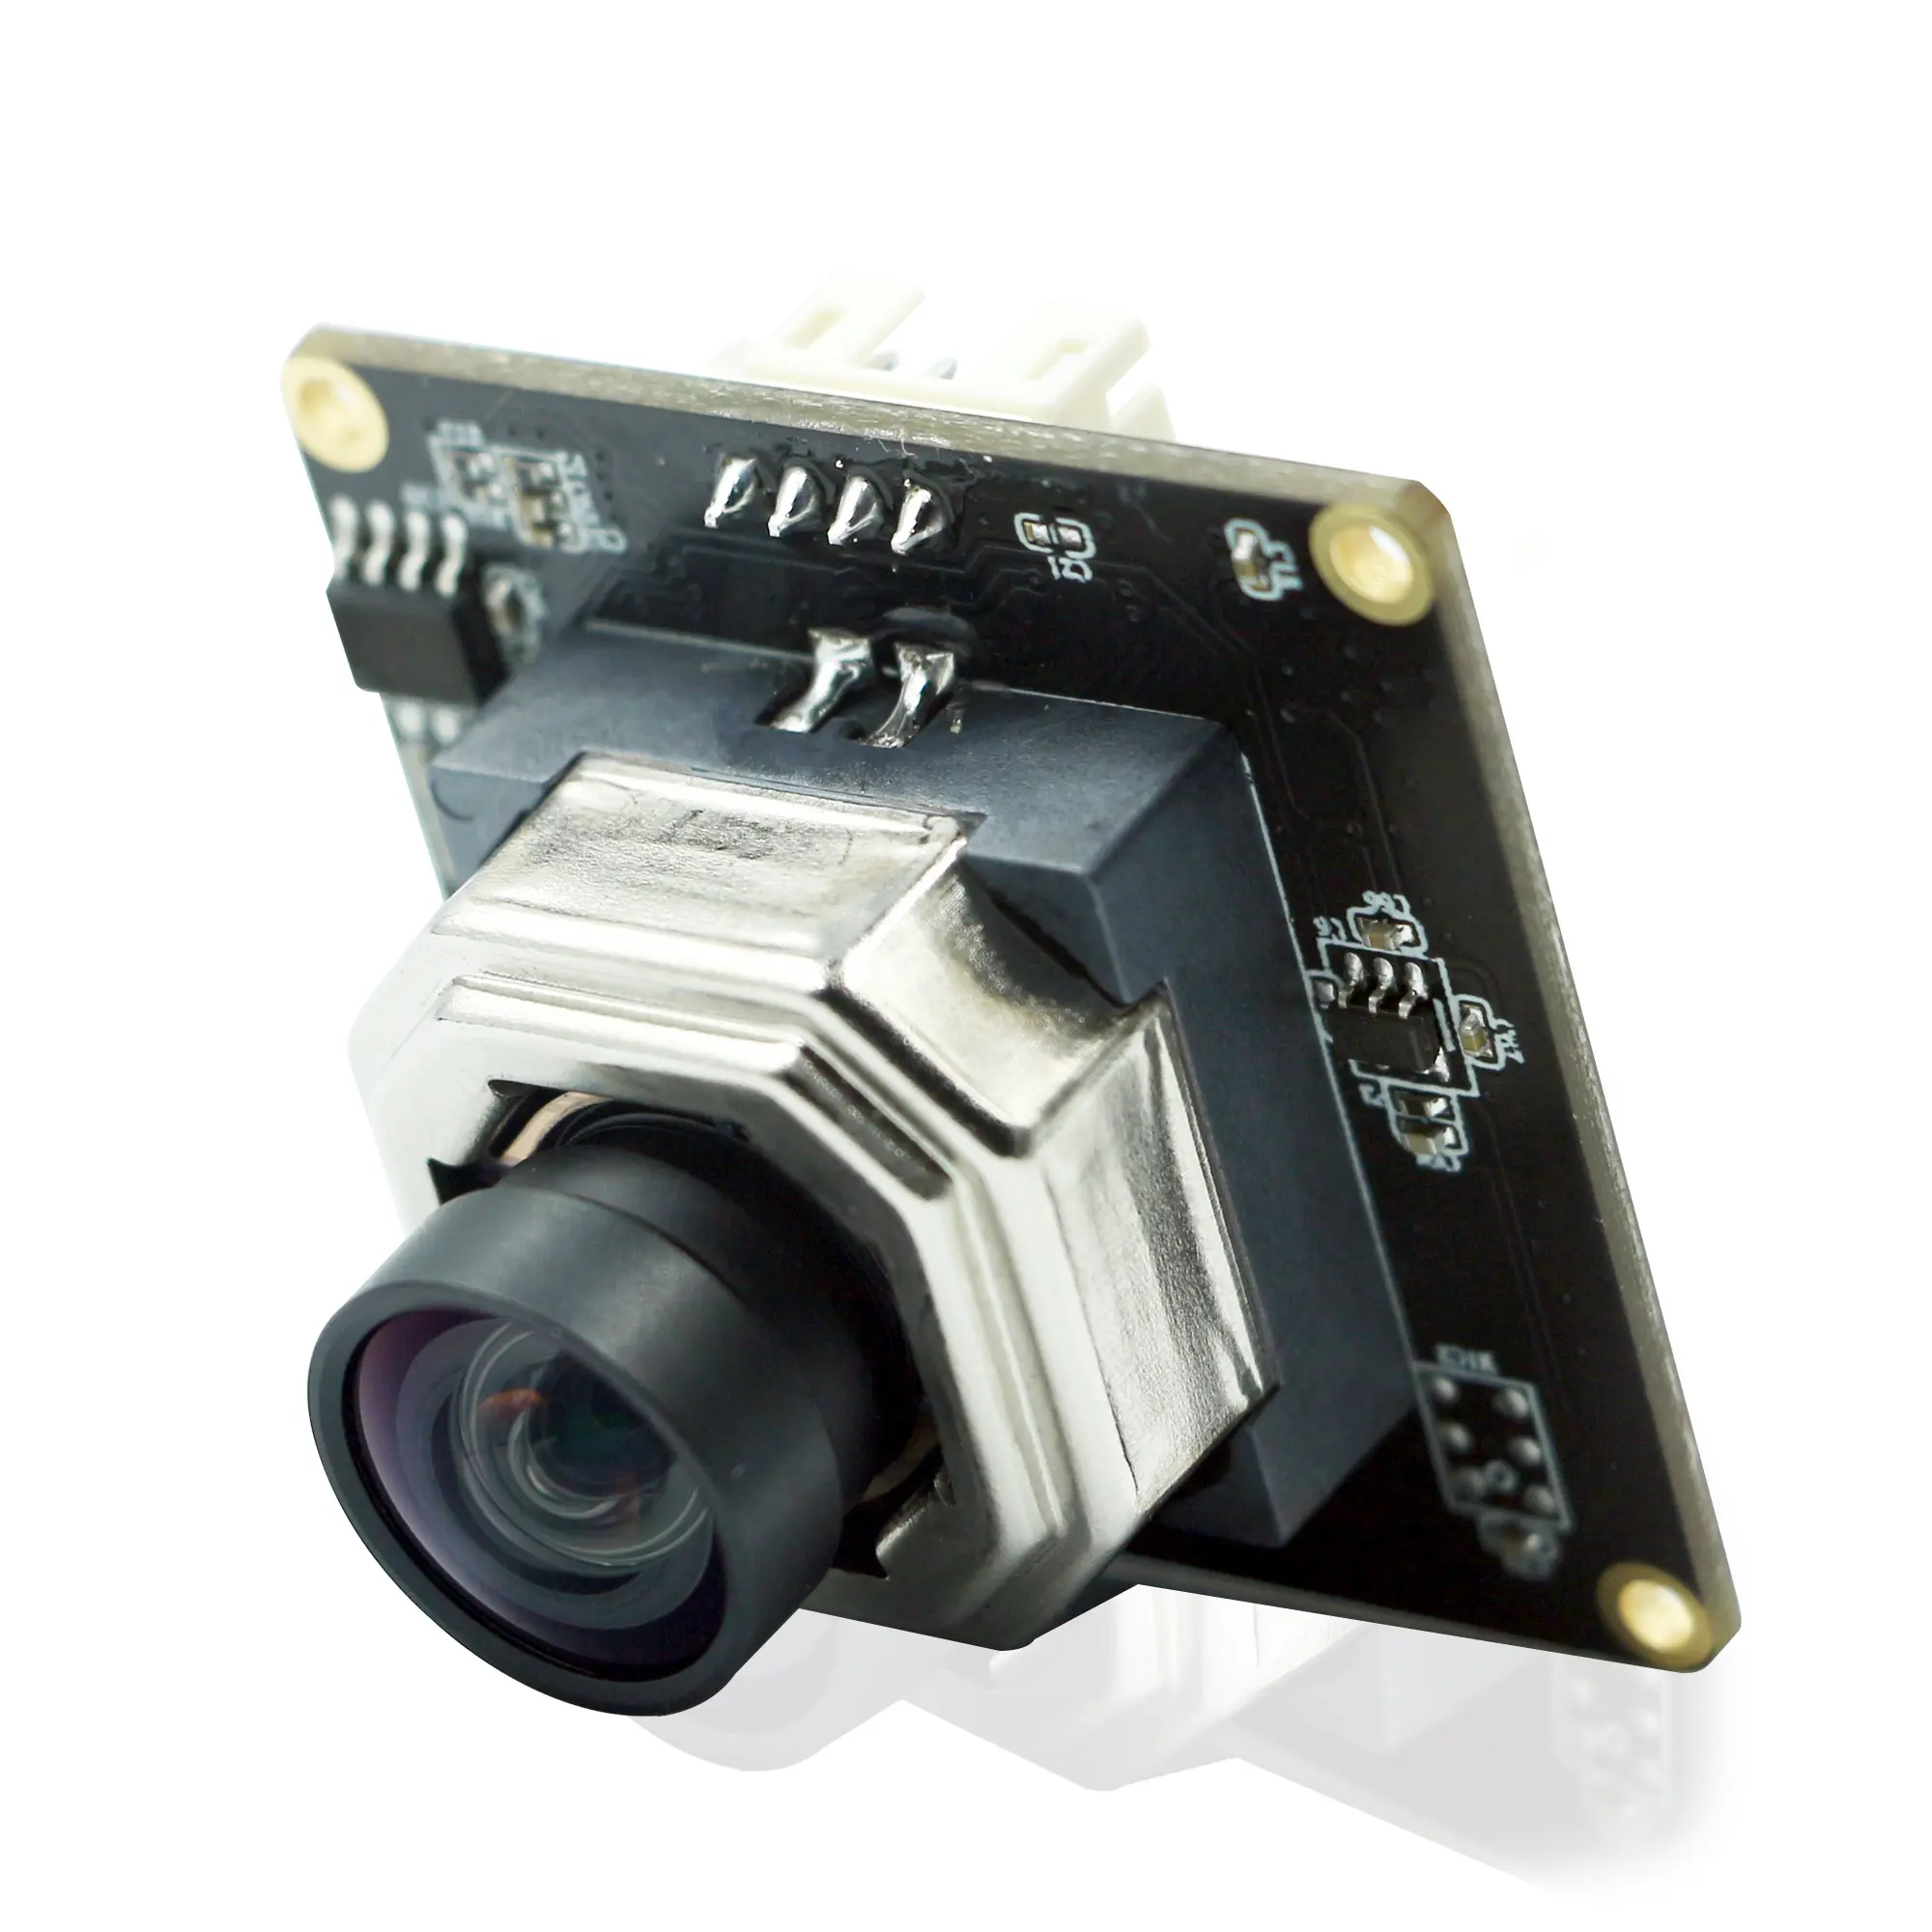 HD imx415 4k tự động lấy nét Fisheye ống kính video máy ảnh mô-đun ánh sáng sao CMOS cảm biến USB công nghiệp 8MP mô-đun máy ảnh mini